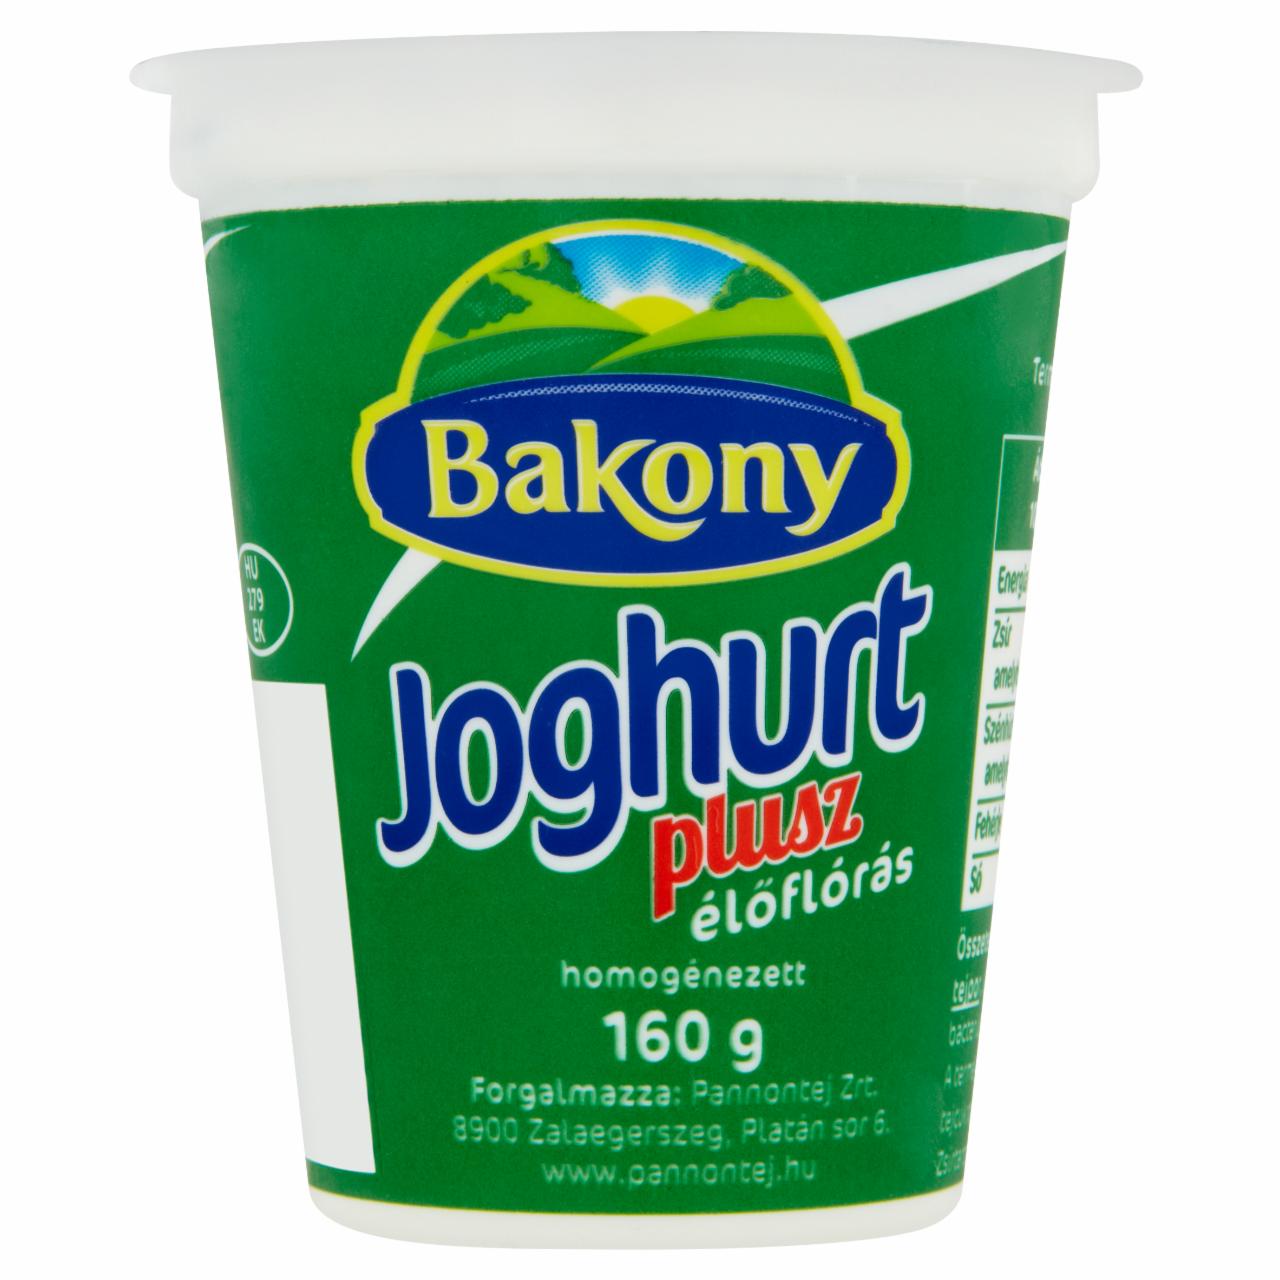 Képek - Bakony Joghurt Plusz élőflórás joghurt 160 g